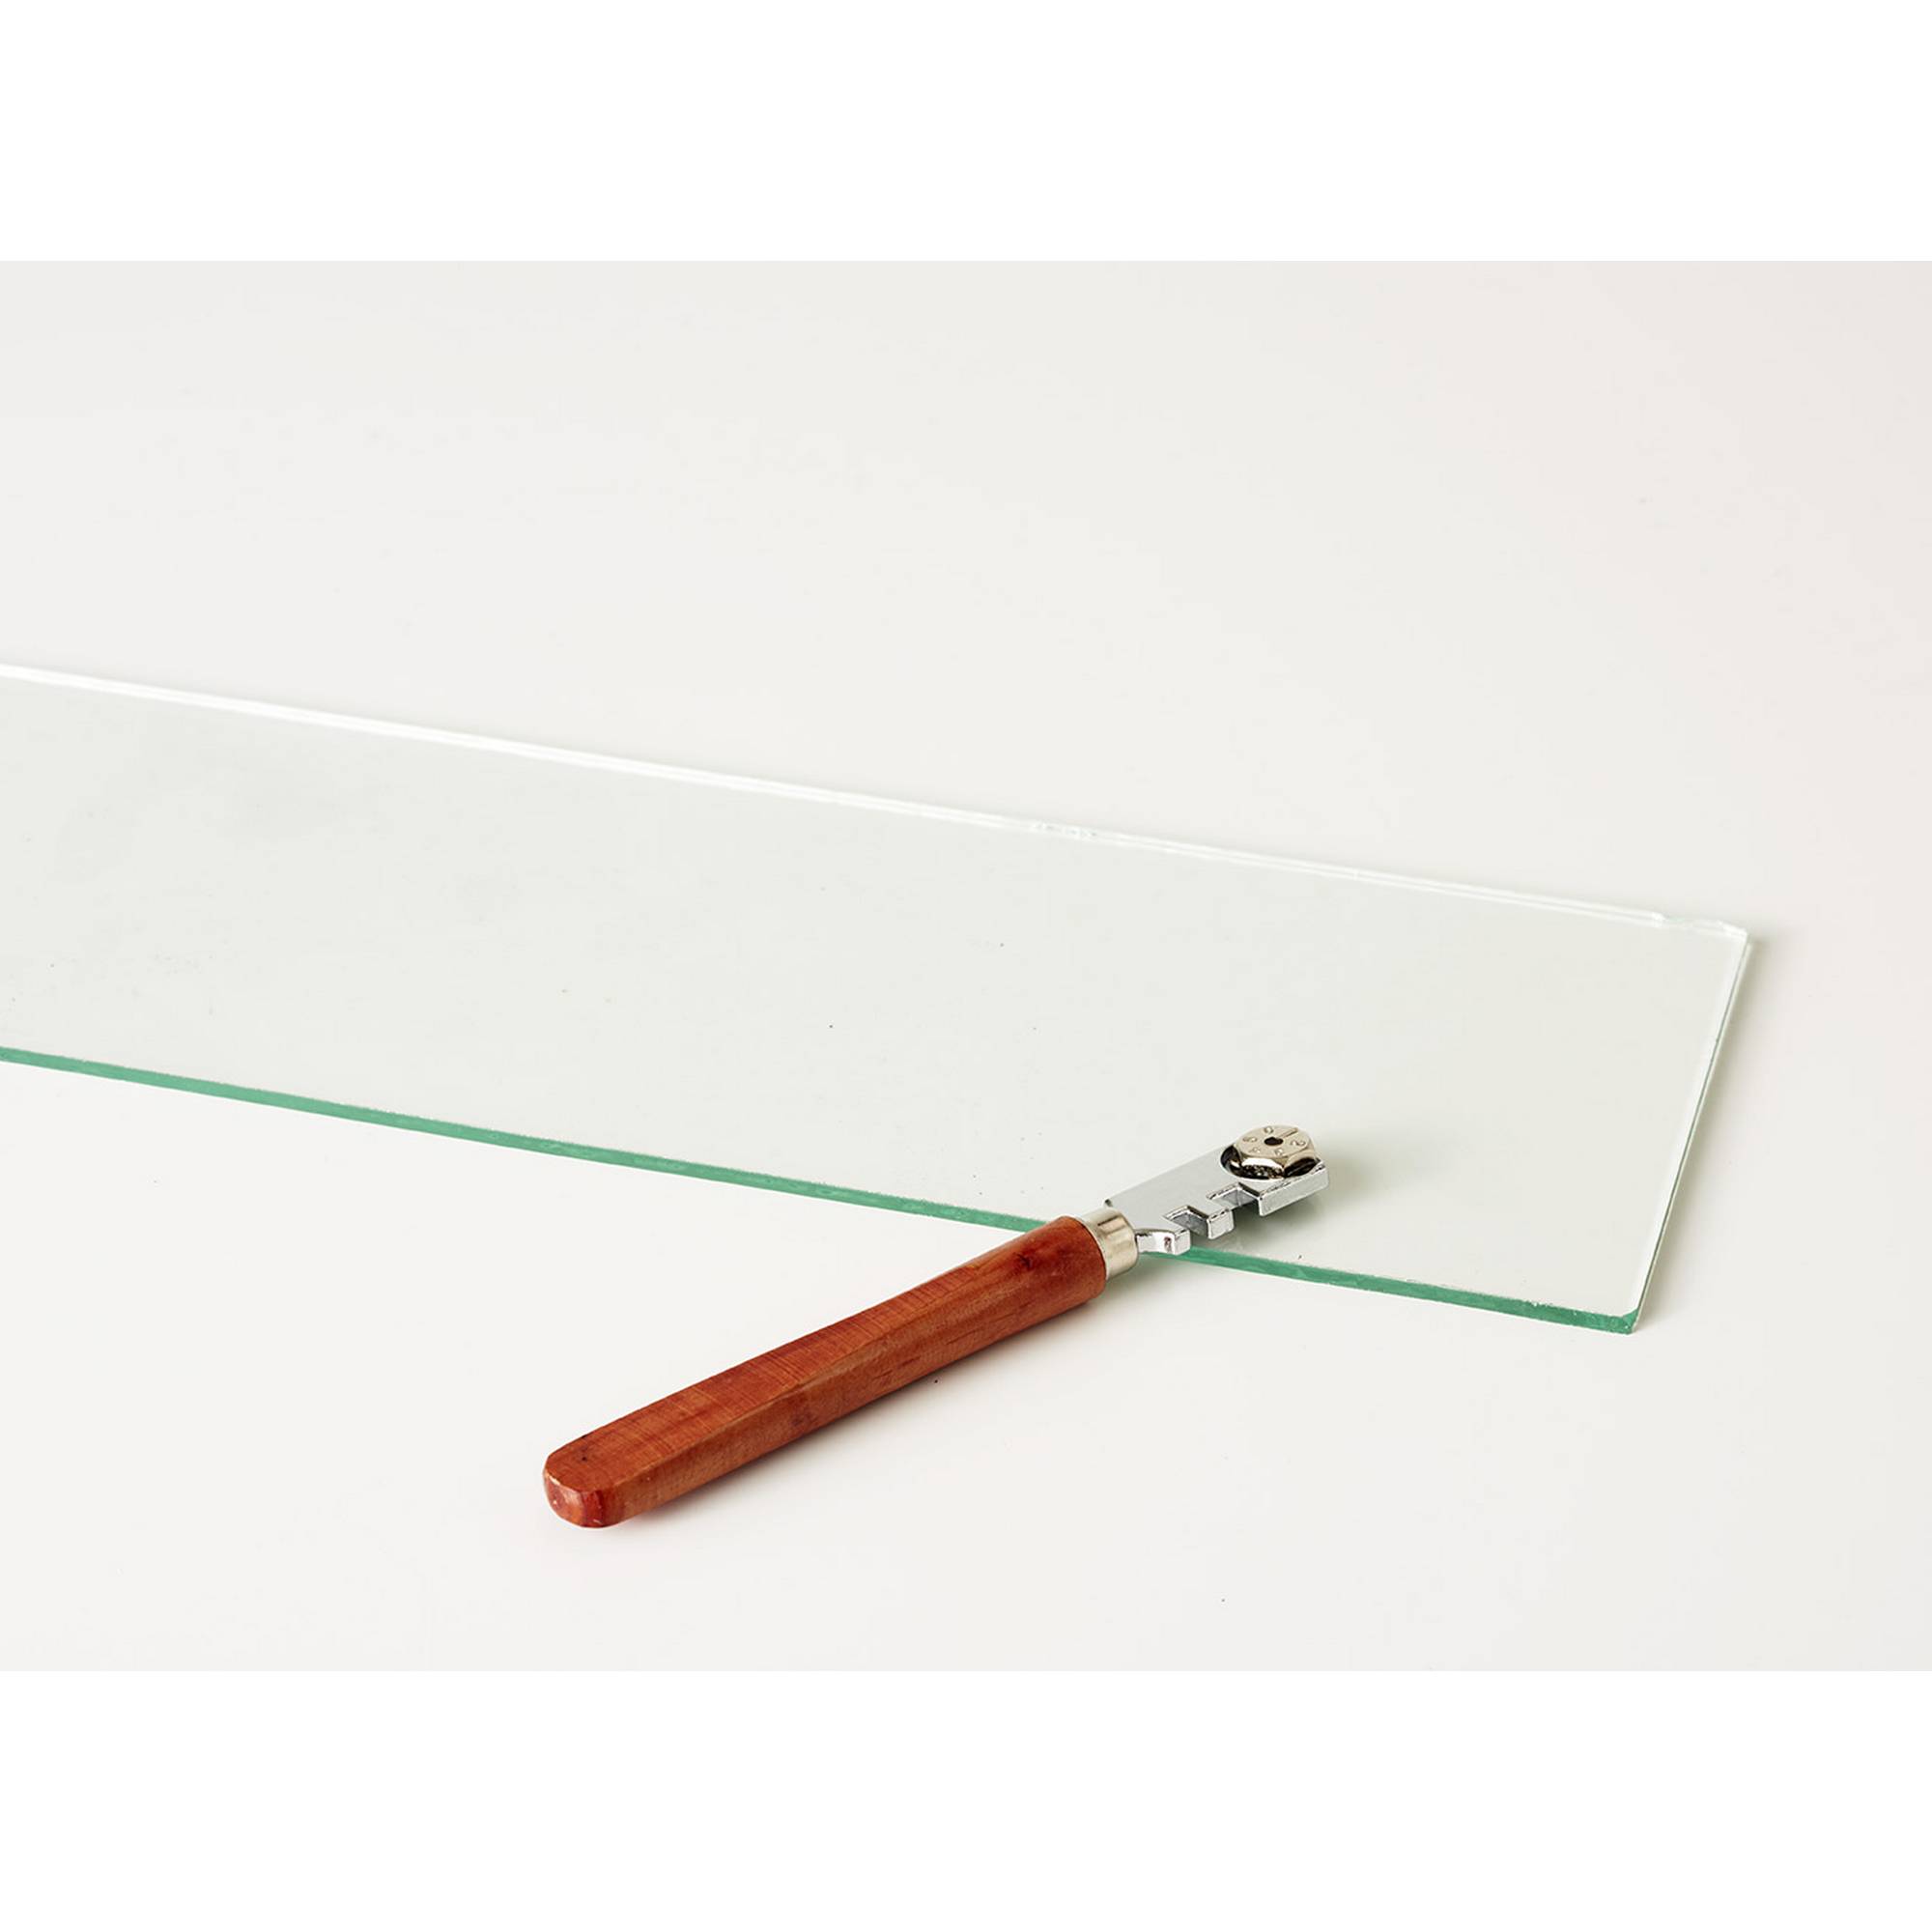 Glasschneider für Blankglas 13 cm + product picture